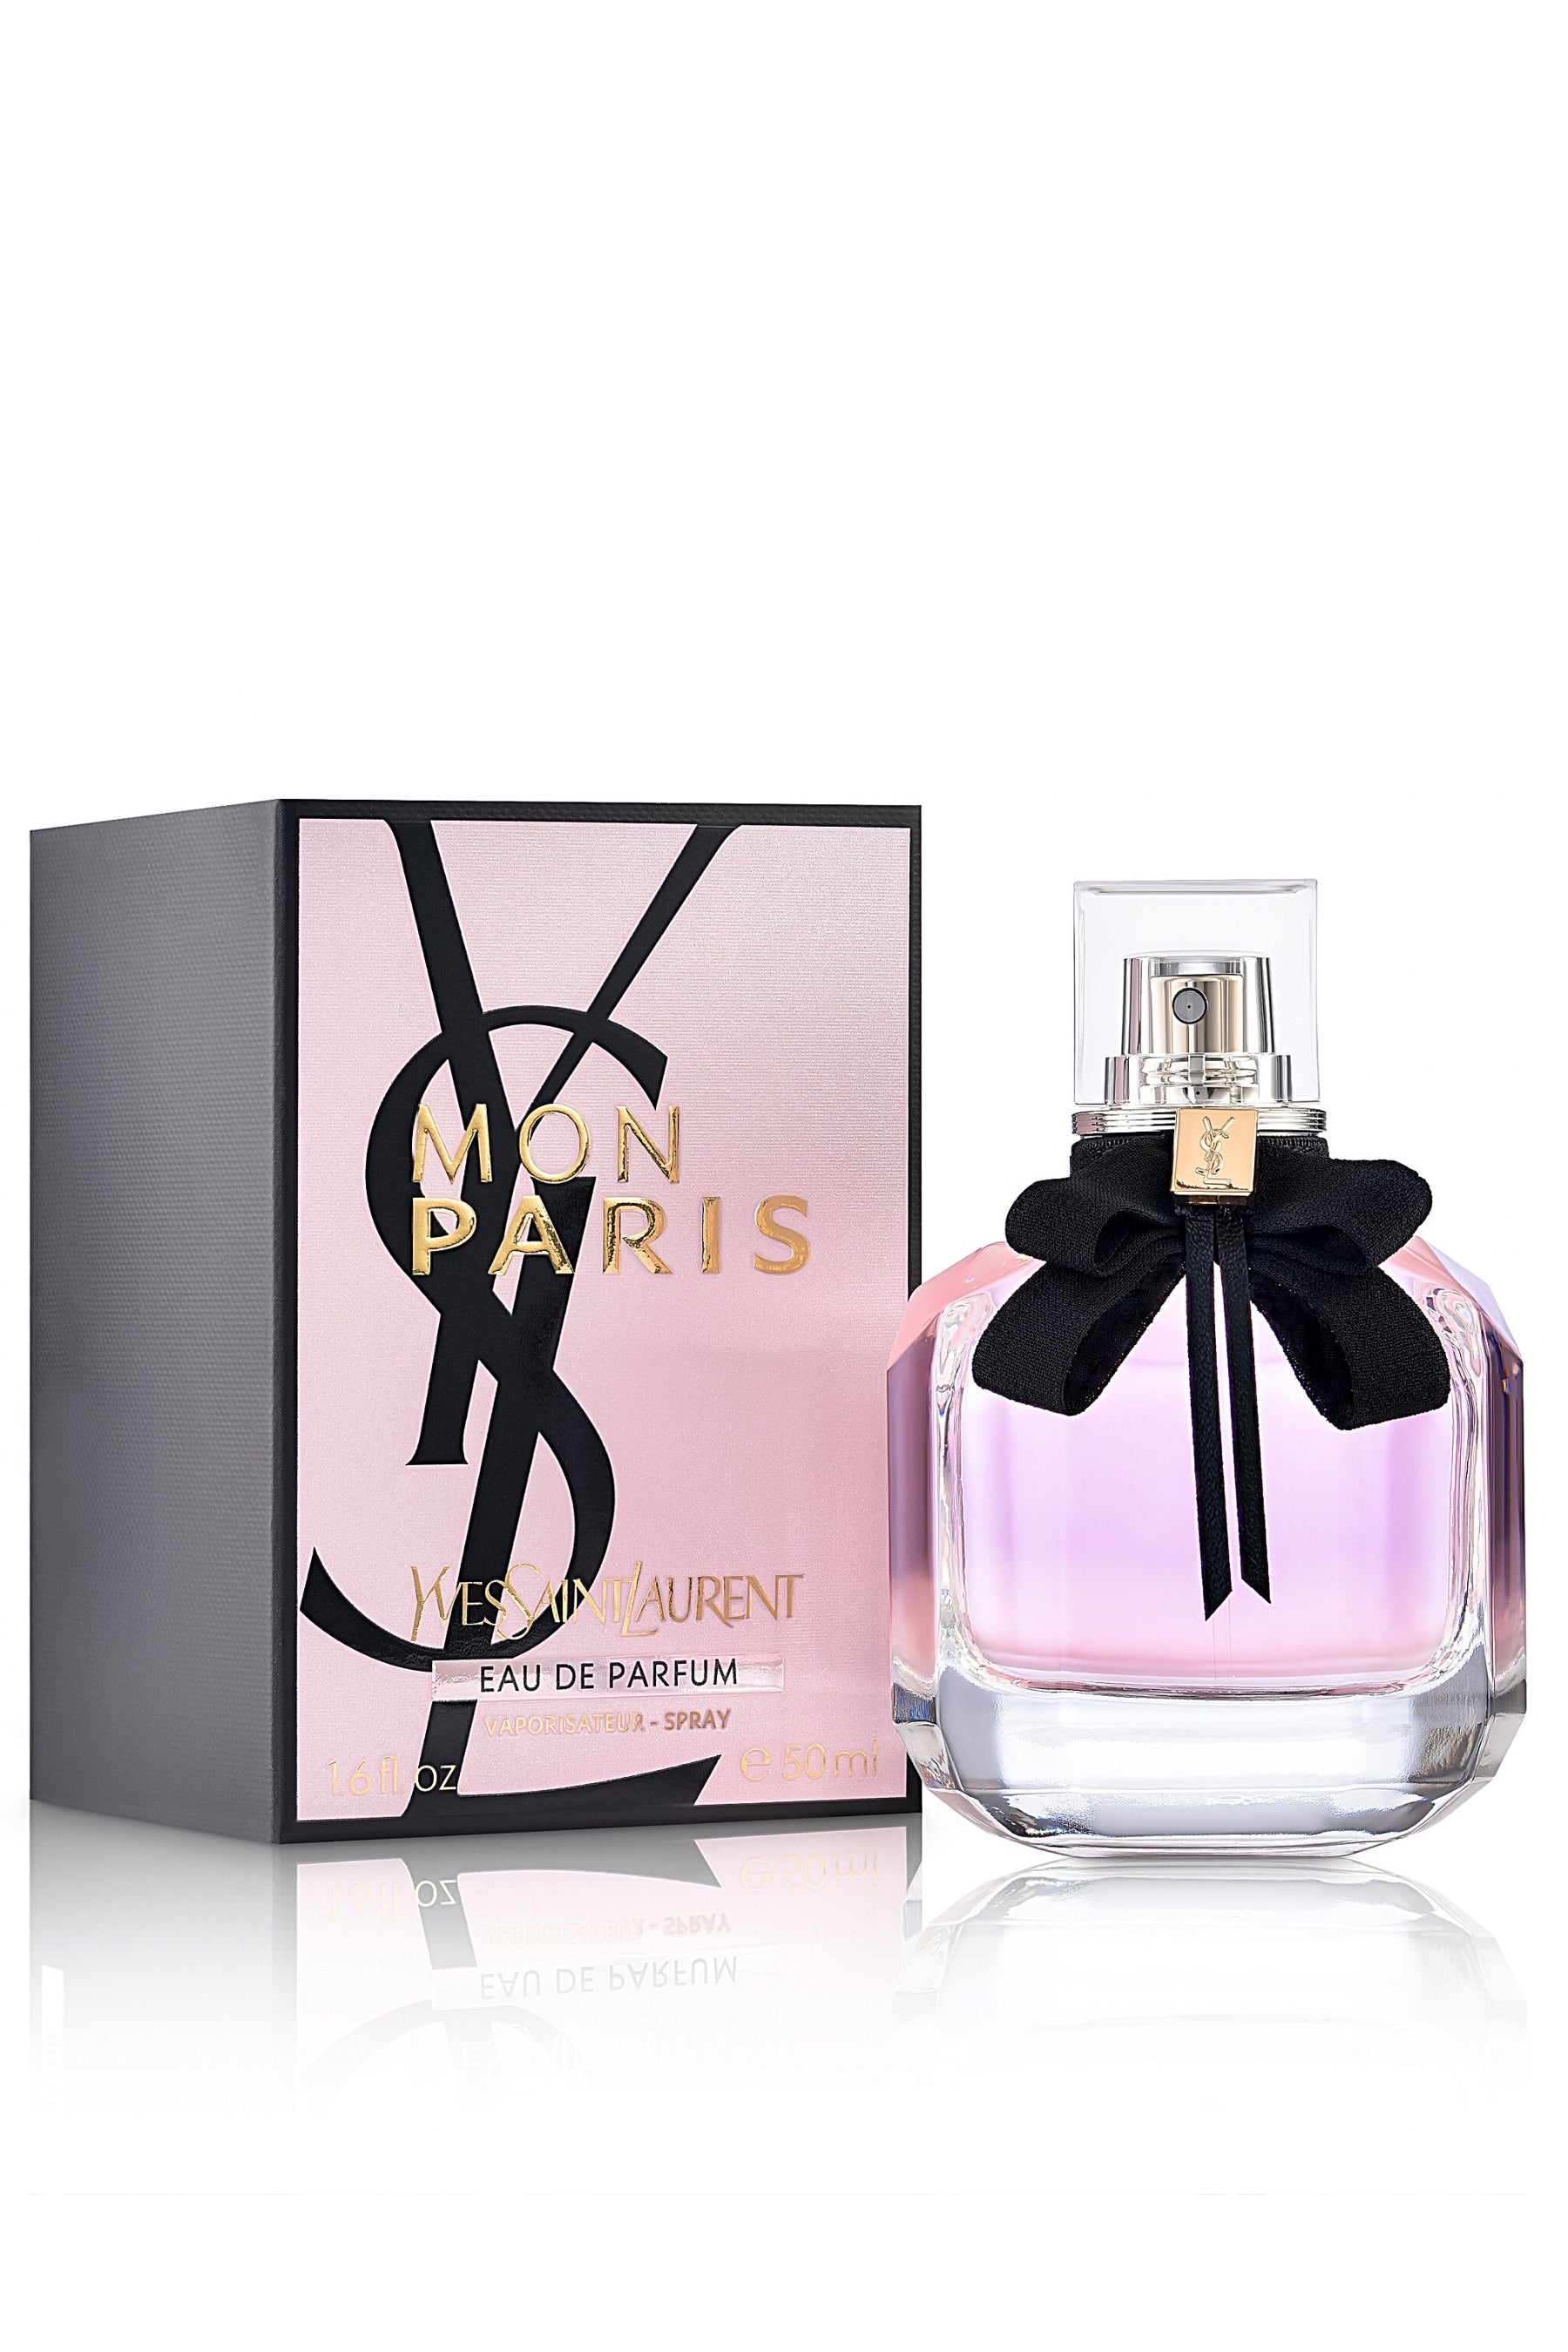 YSL Yves Saint Laurent | Mon Paris Eau de Parfum